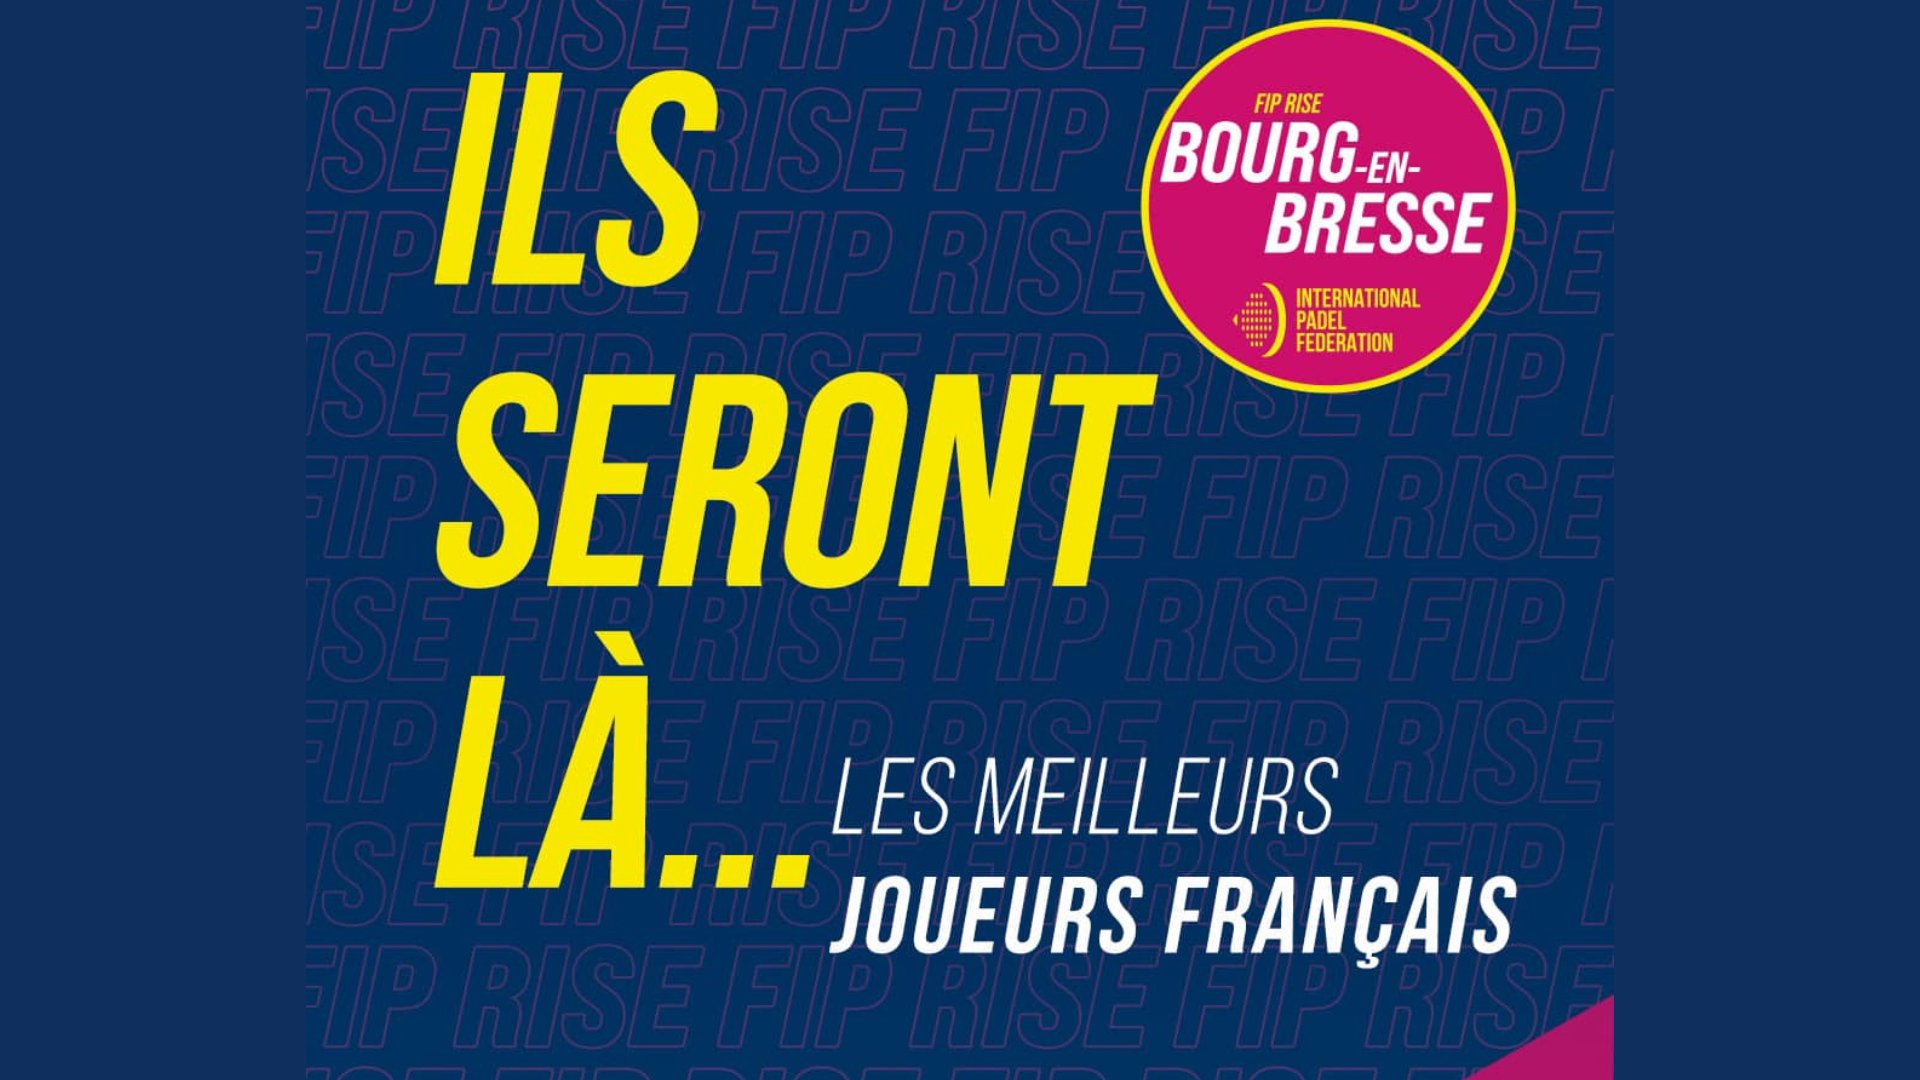 FIP Rise Bourg-en-Bresse: i migliori giocatori francesi saranno presenti!